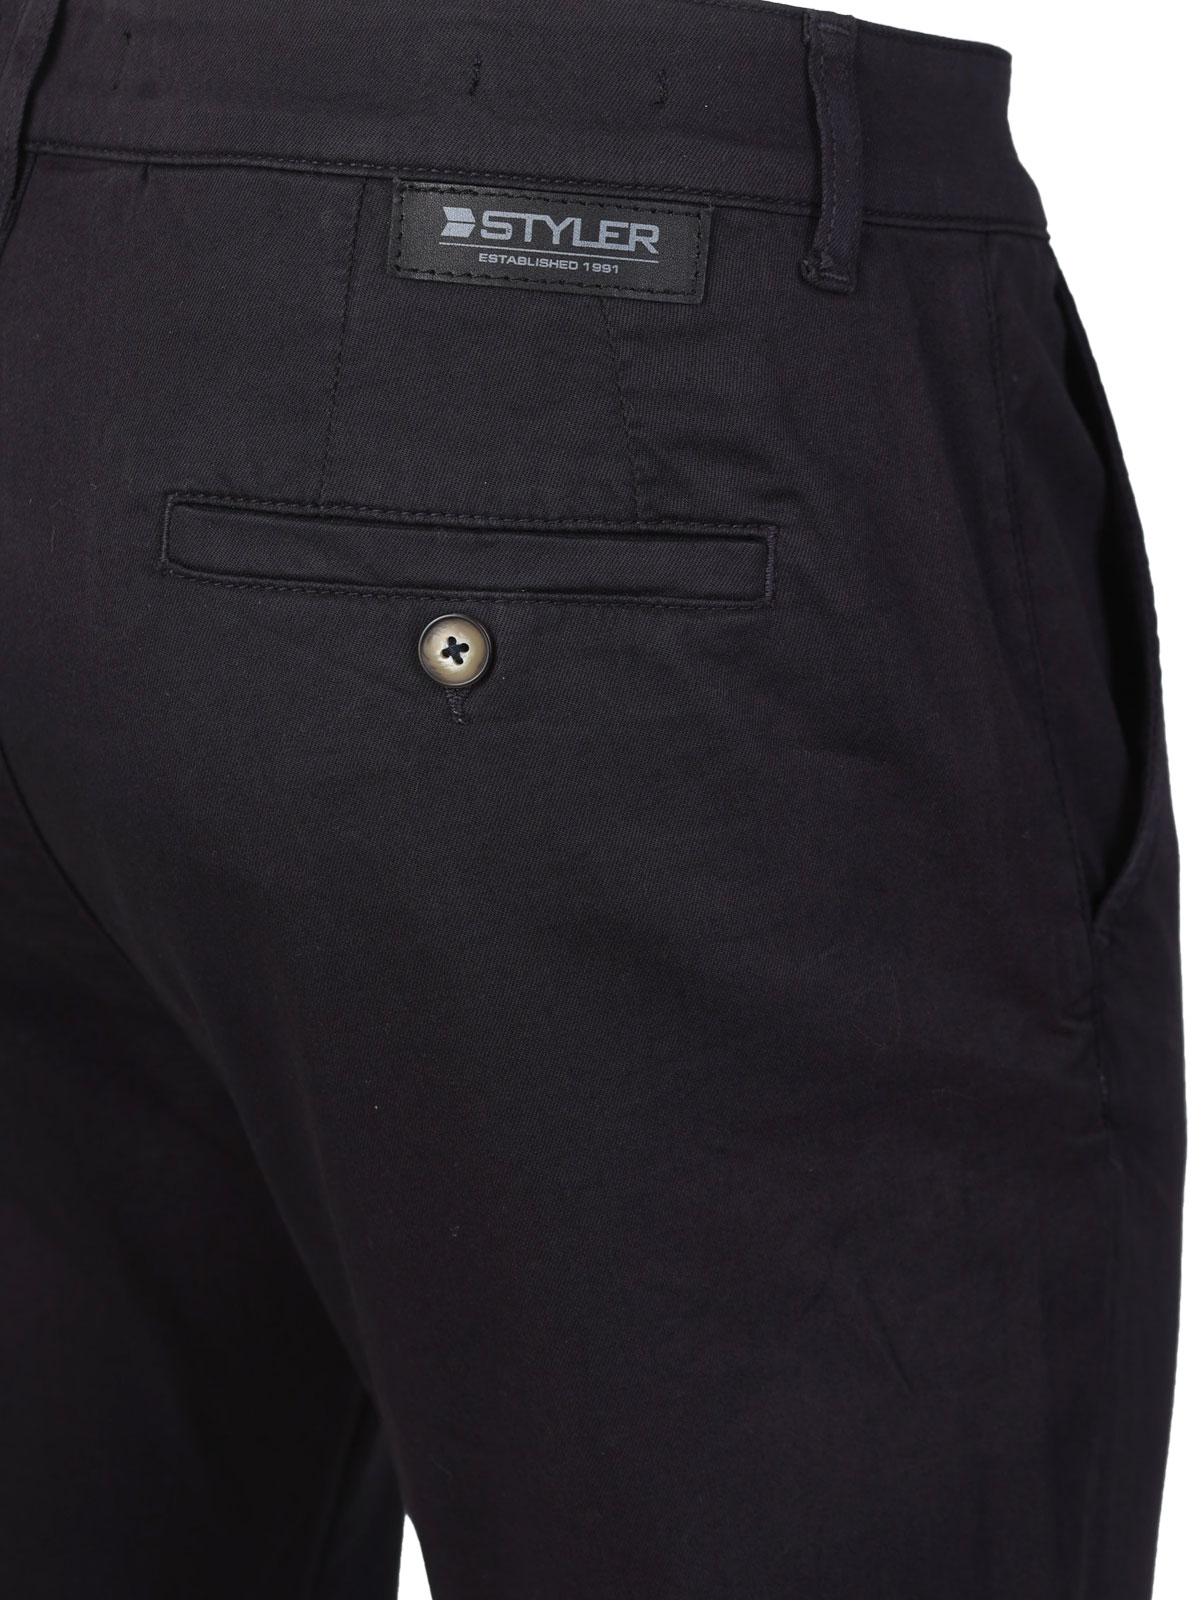 Ανδρικό εφαρμοστό παντελόνι σε σκούρο μπ - 60307 € 66.93 img3